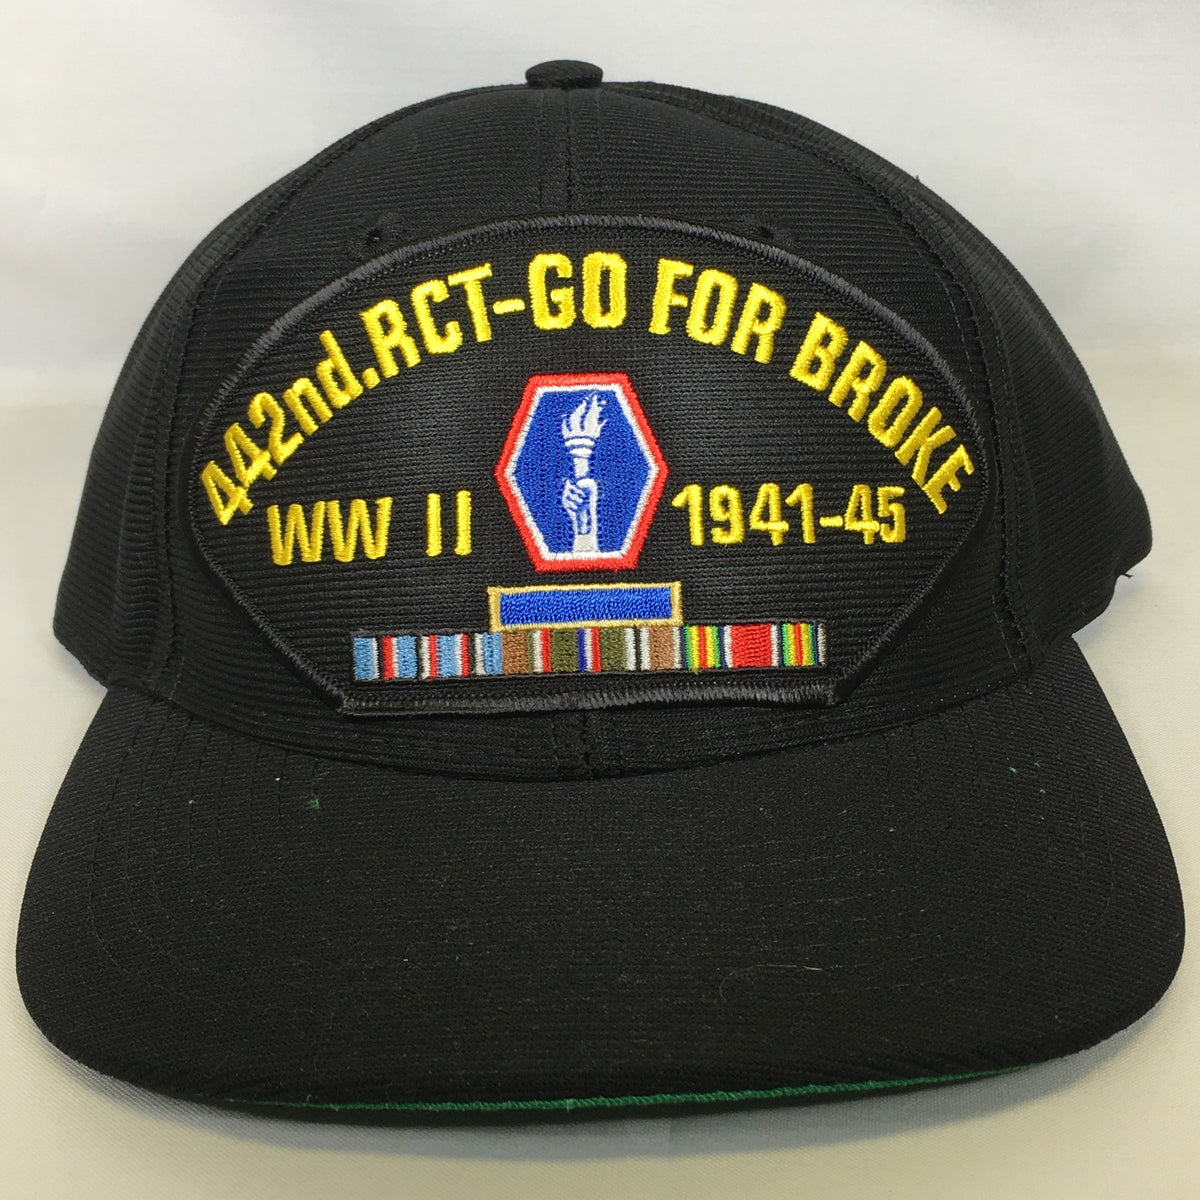 442nd Regimental Combat Team "Go for Broke" - WWII Veteran Cap